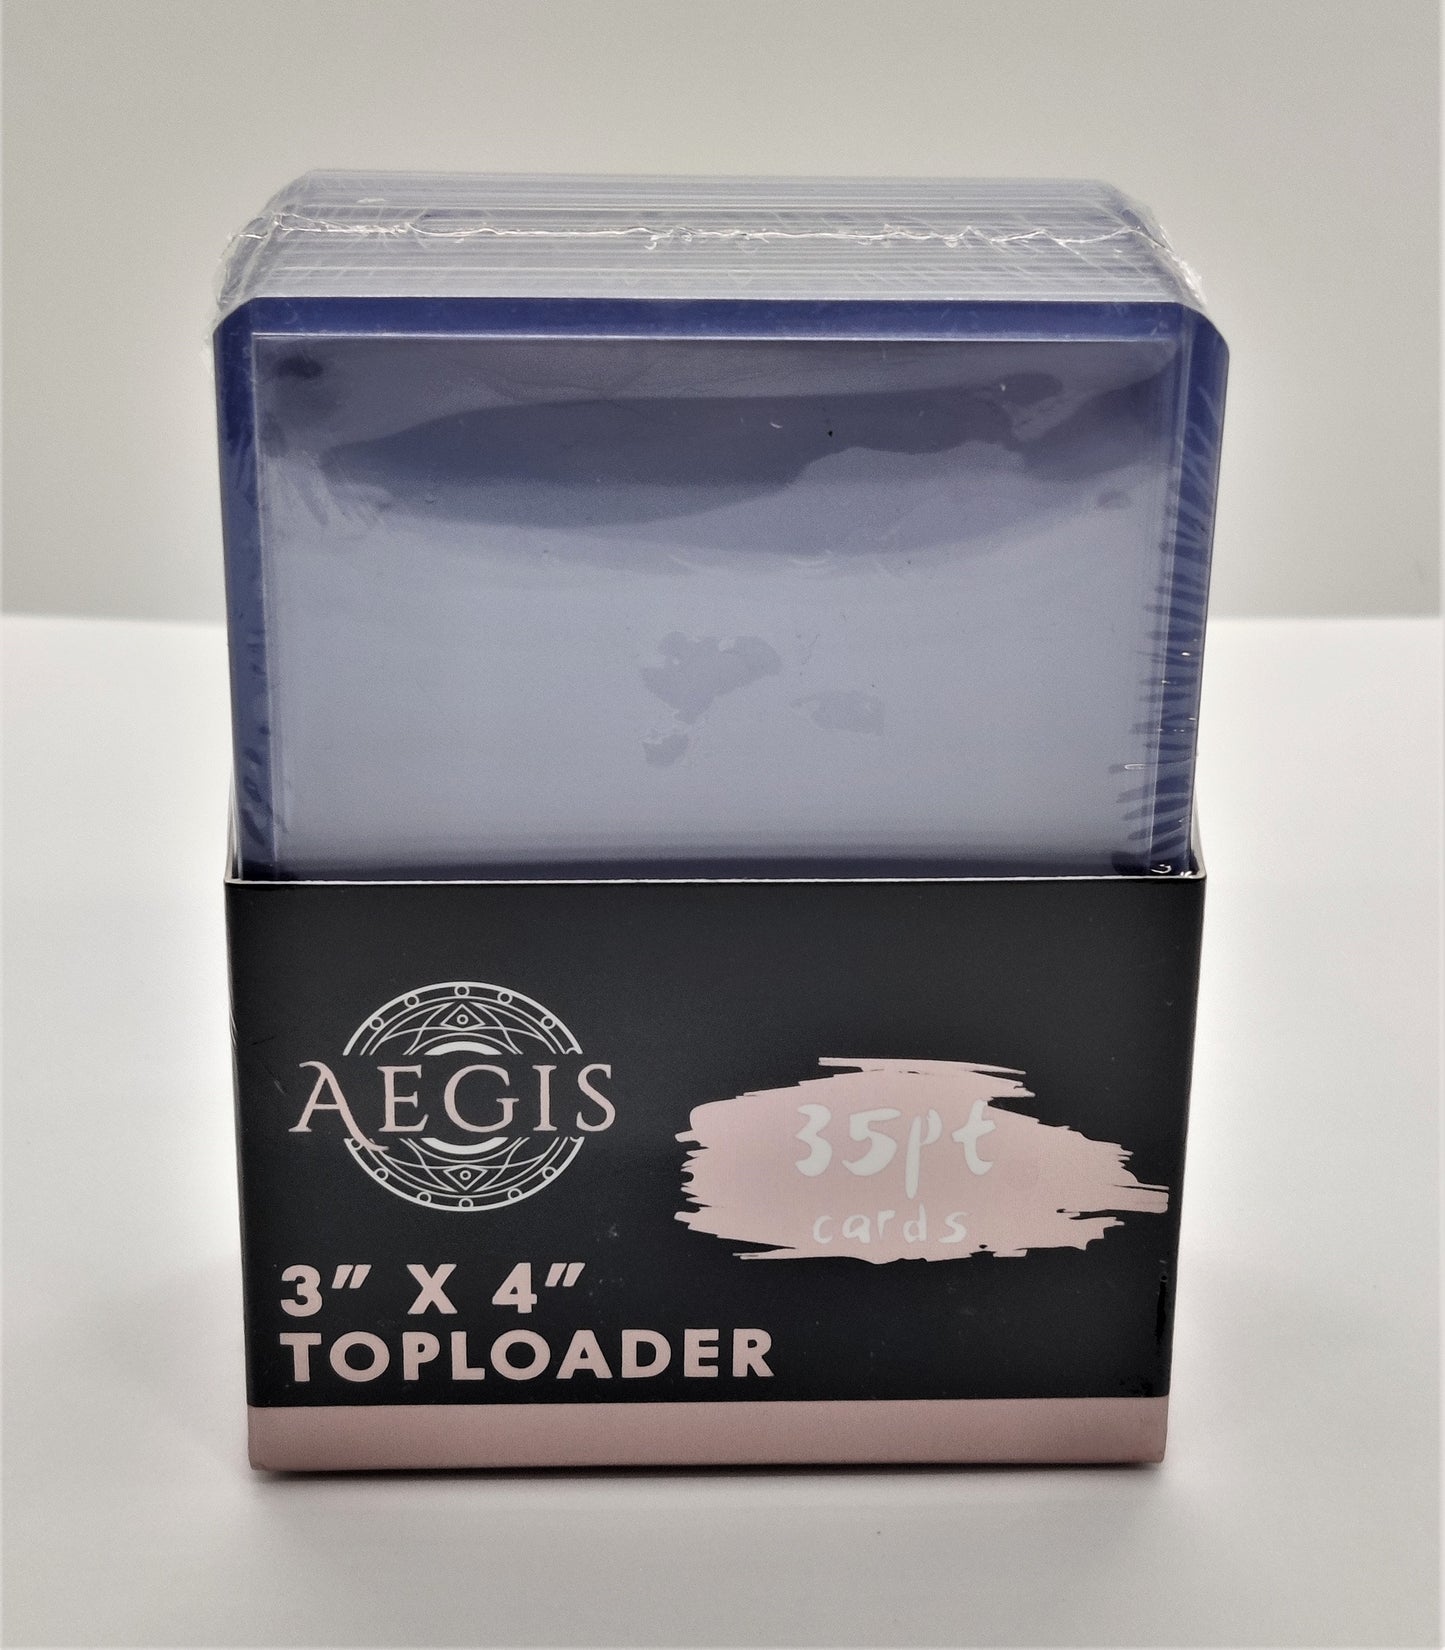 Aegis - 35pt Toploader